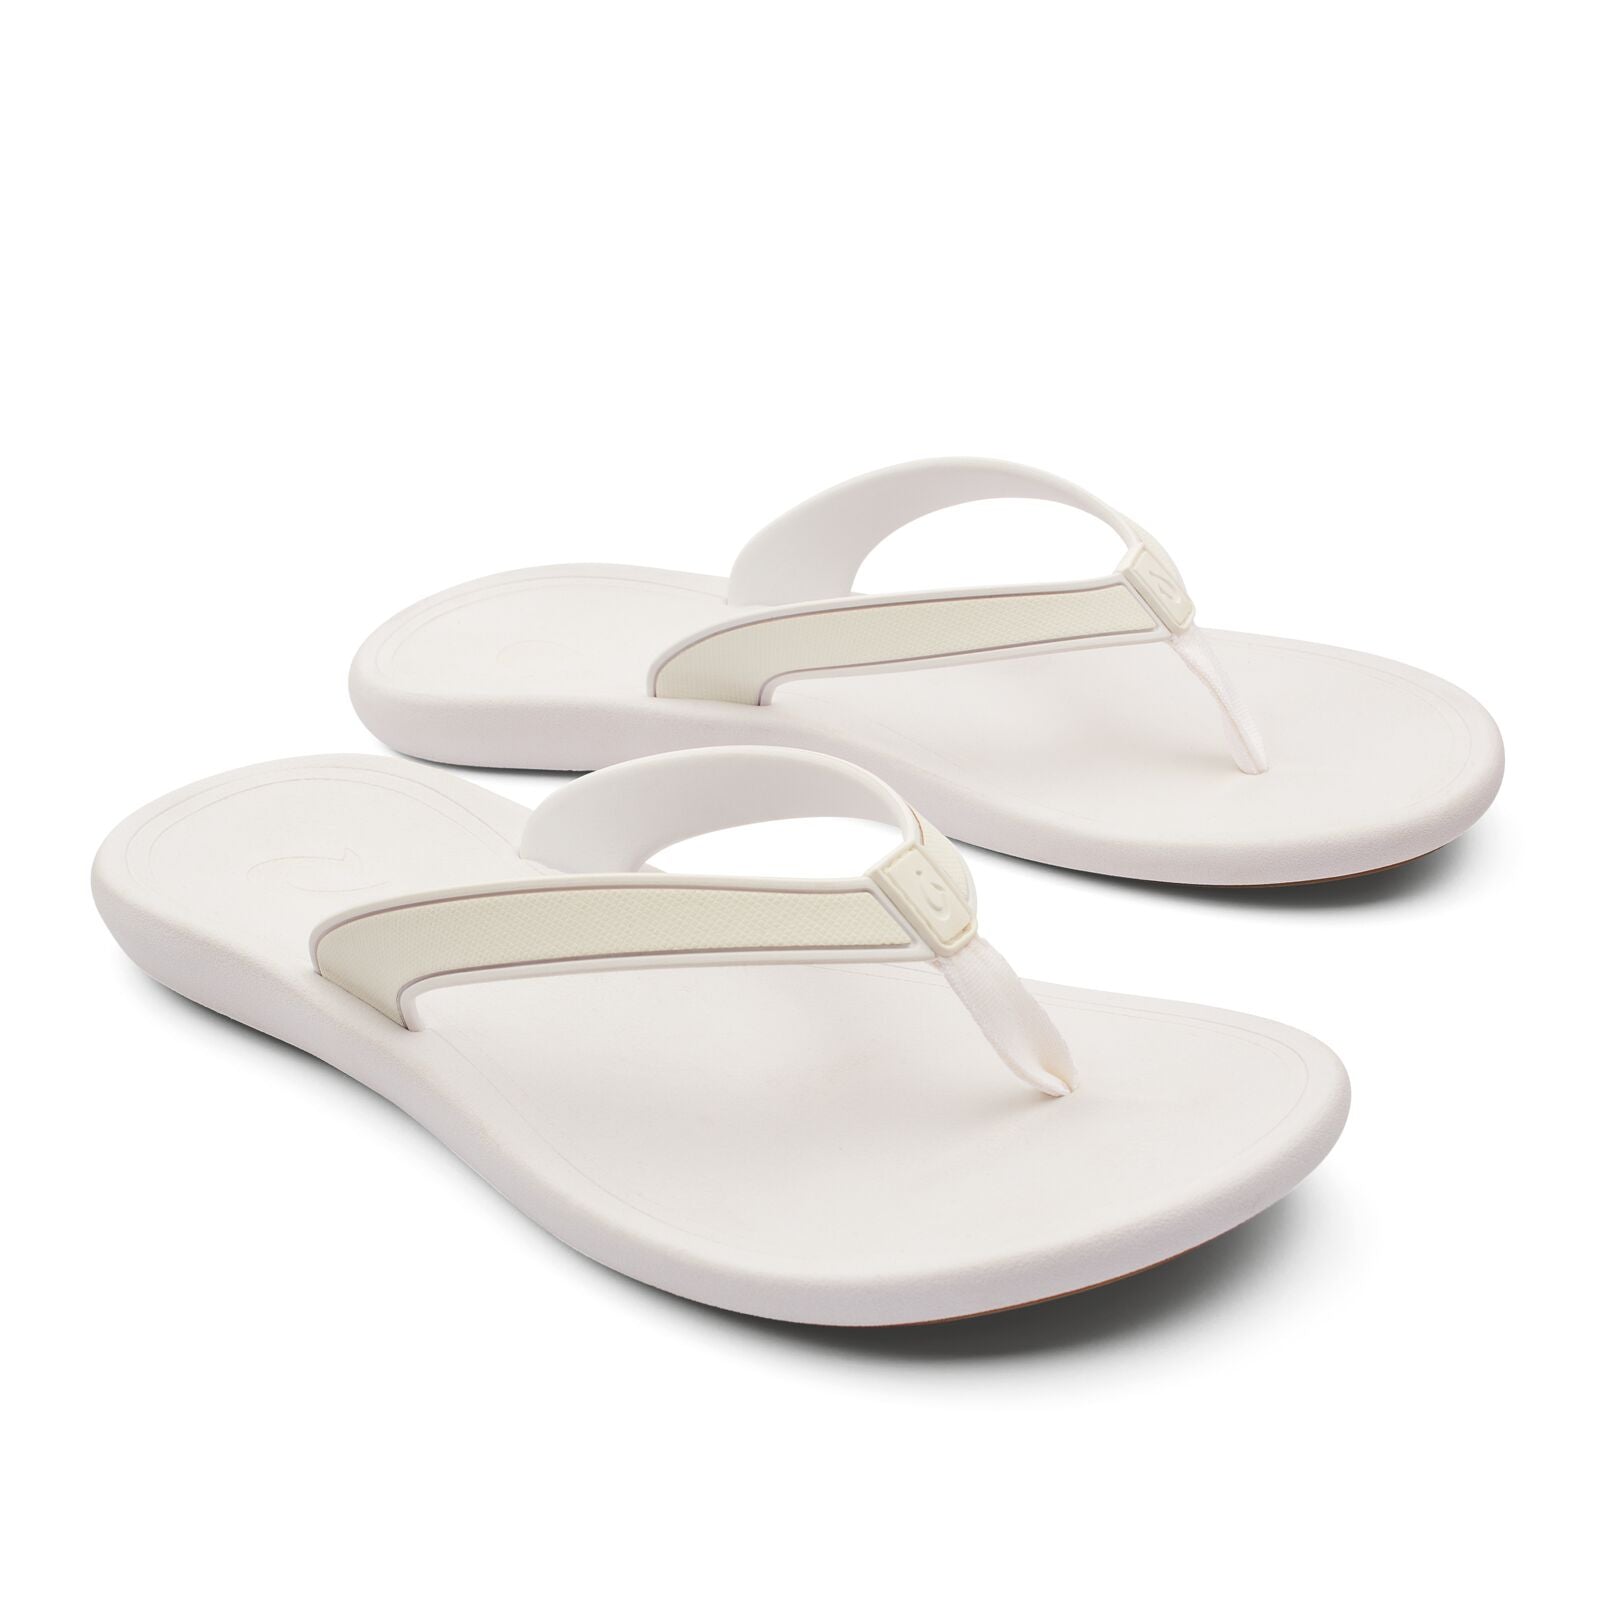 Olukai Kapehe Womens Sandal 4R4R-White-White 8